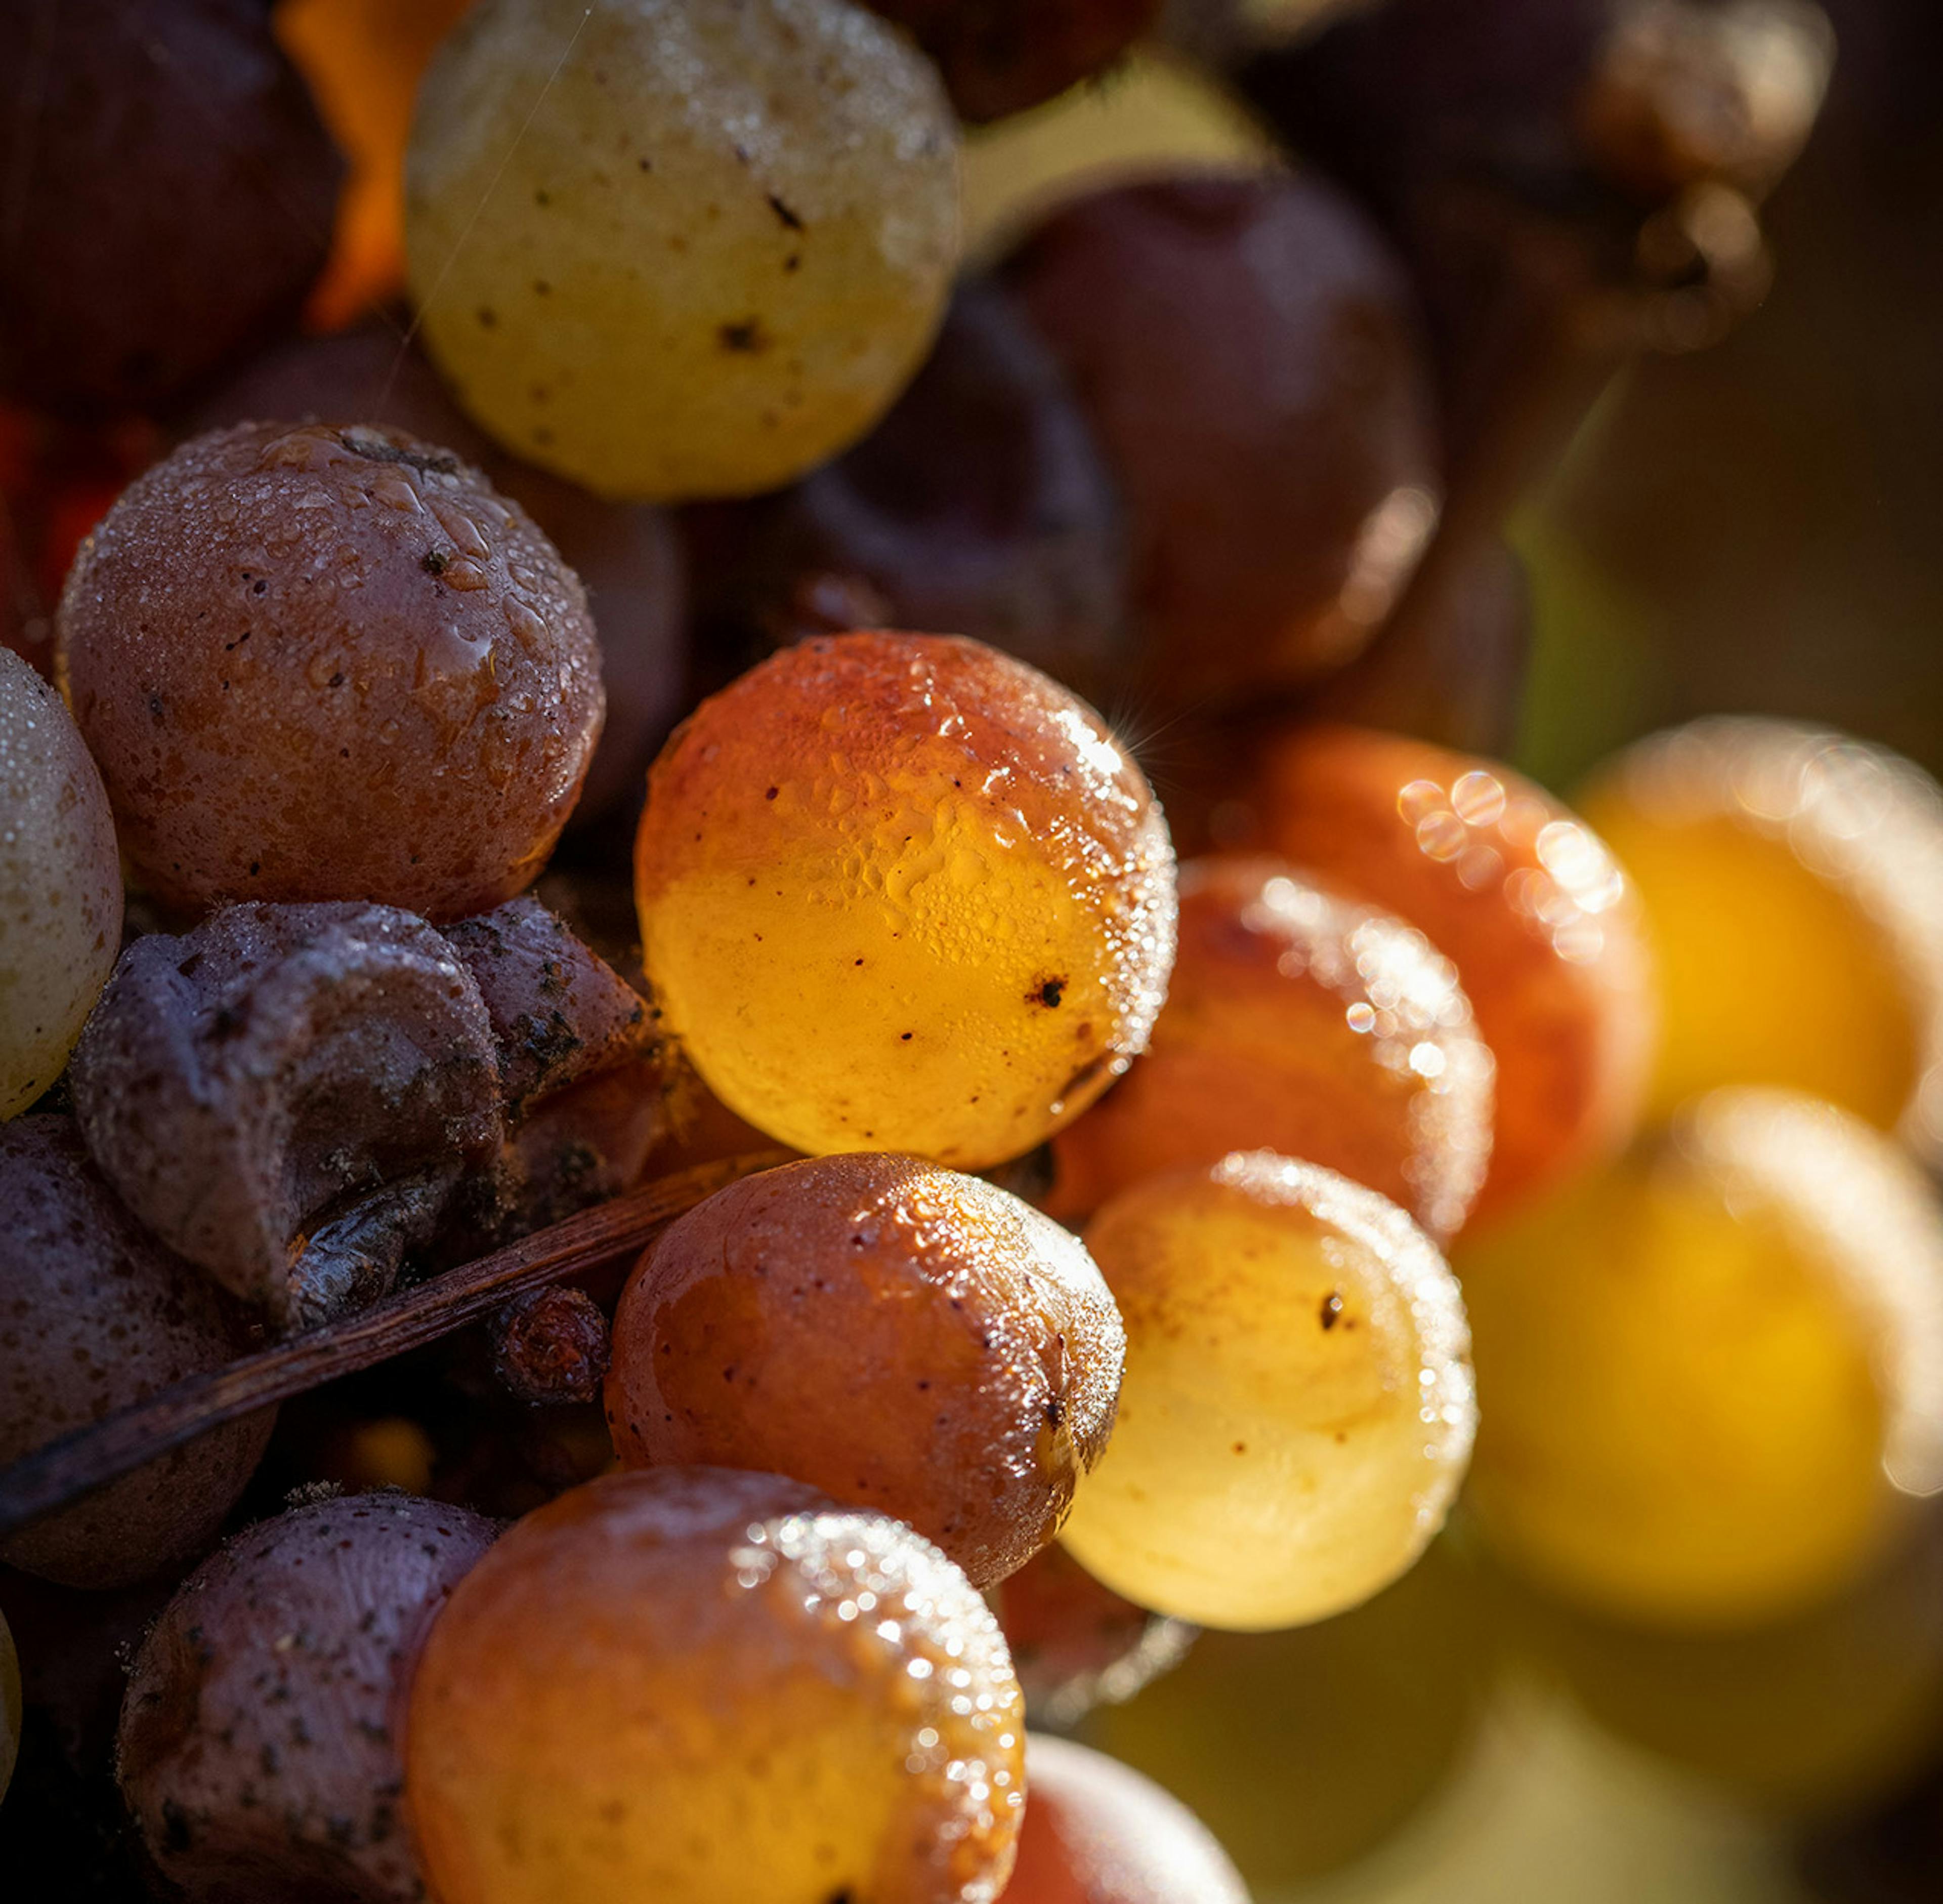 Harvest time at Yquem © Deepix